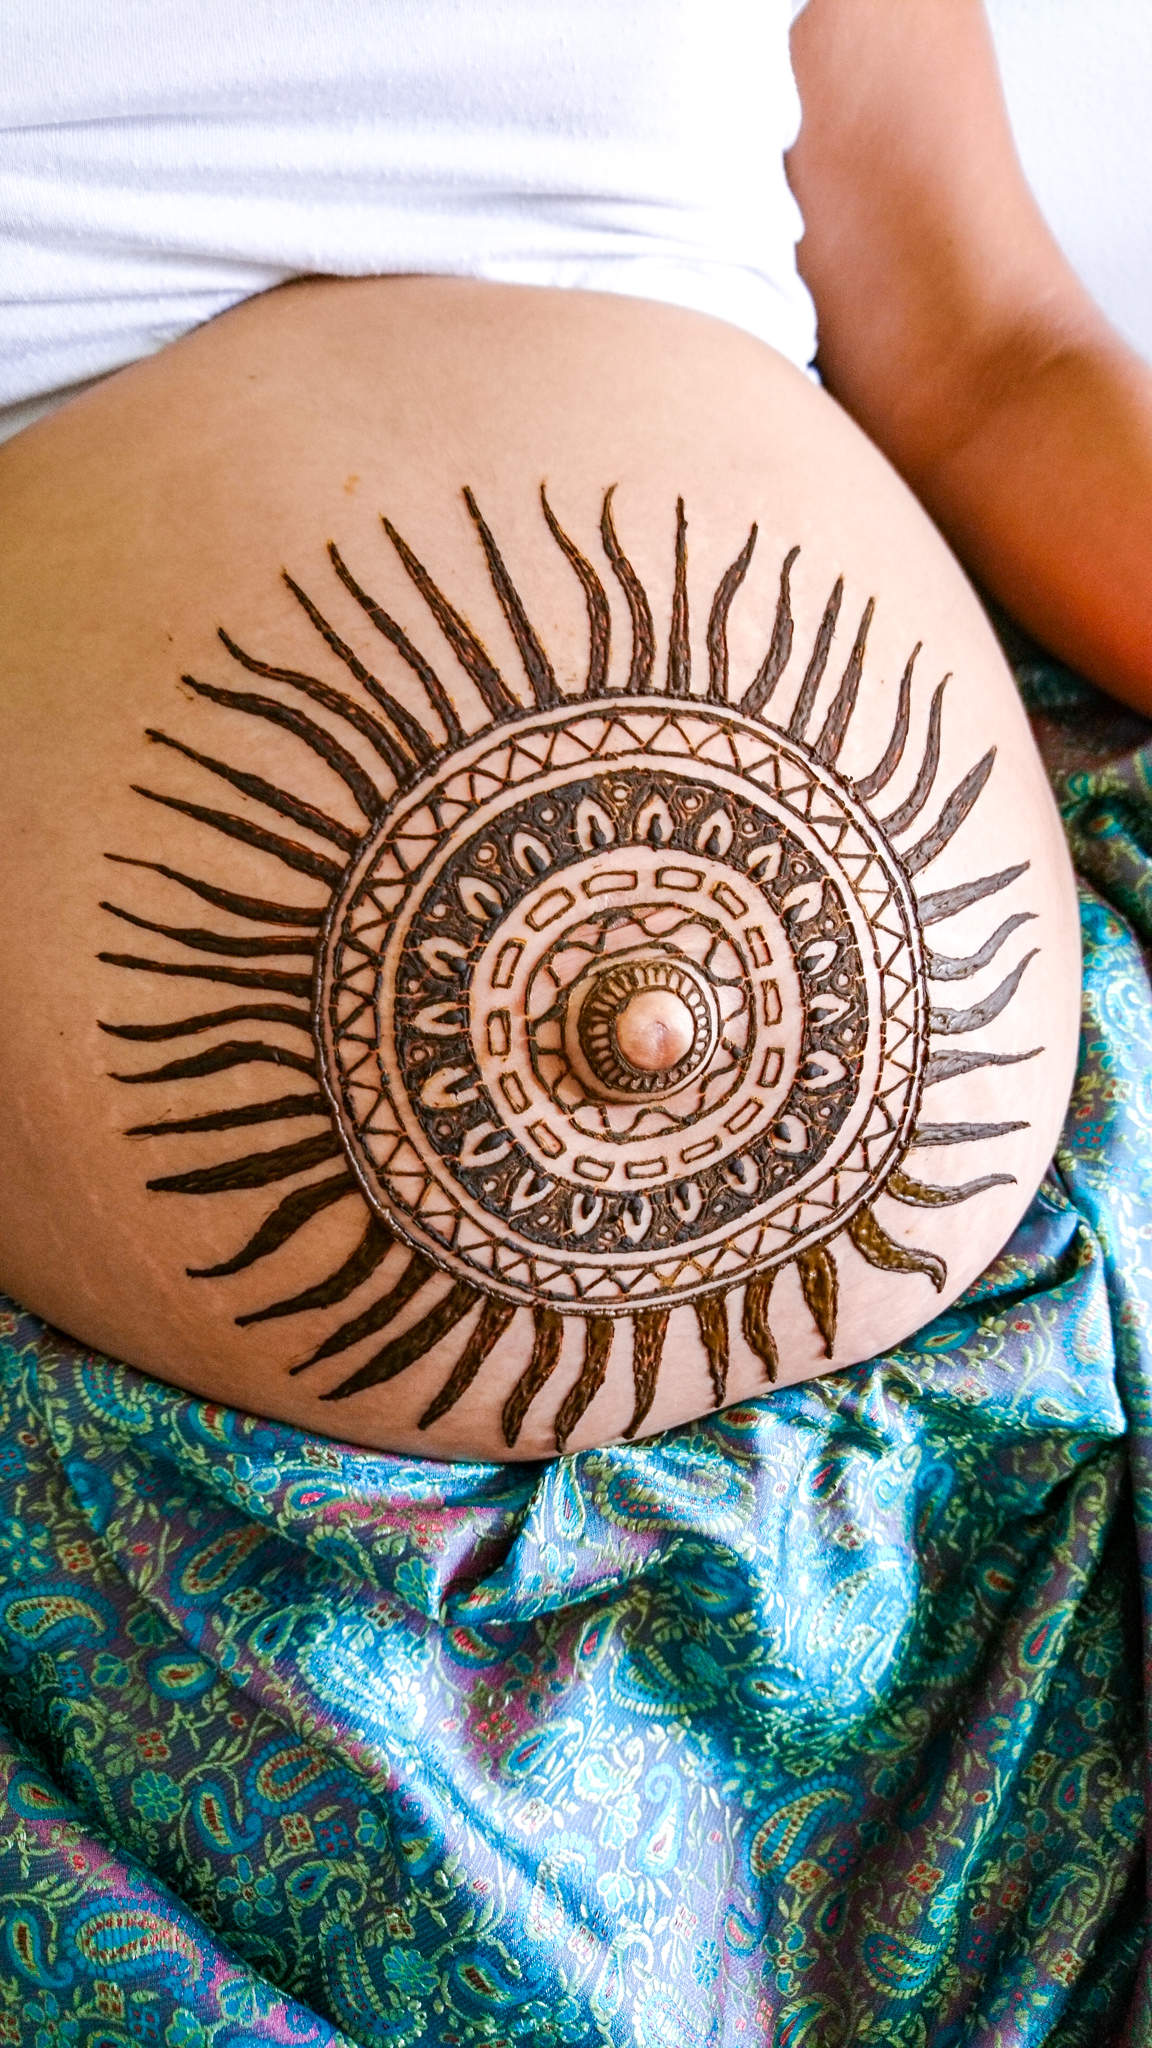 für die werdende Mama aus Guatemala eine Maya Sonne, passend zum indigenen Background